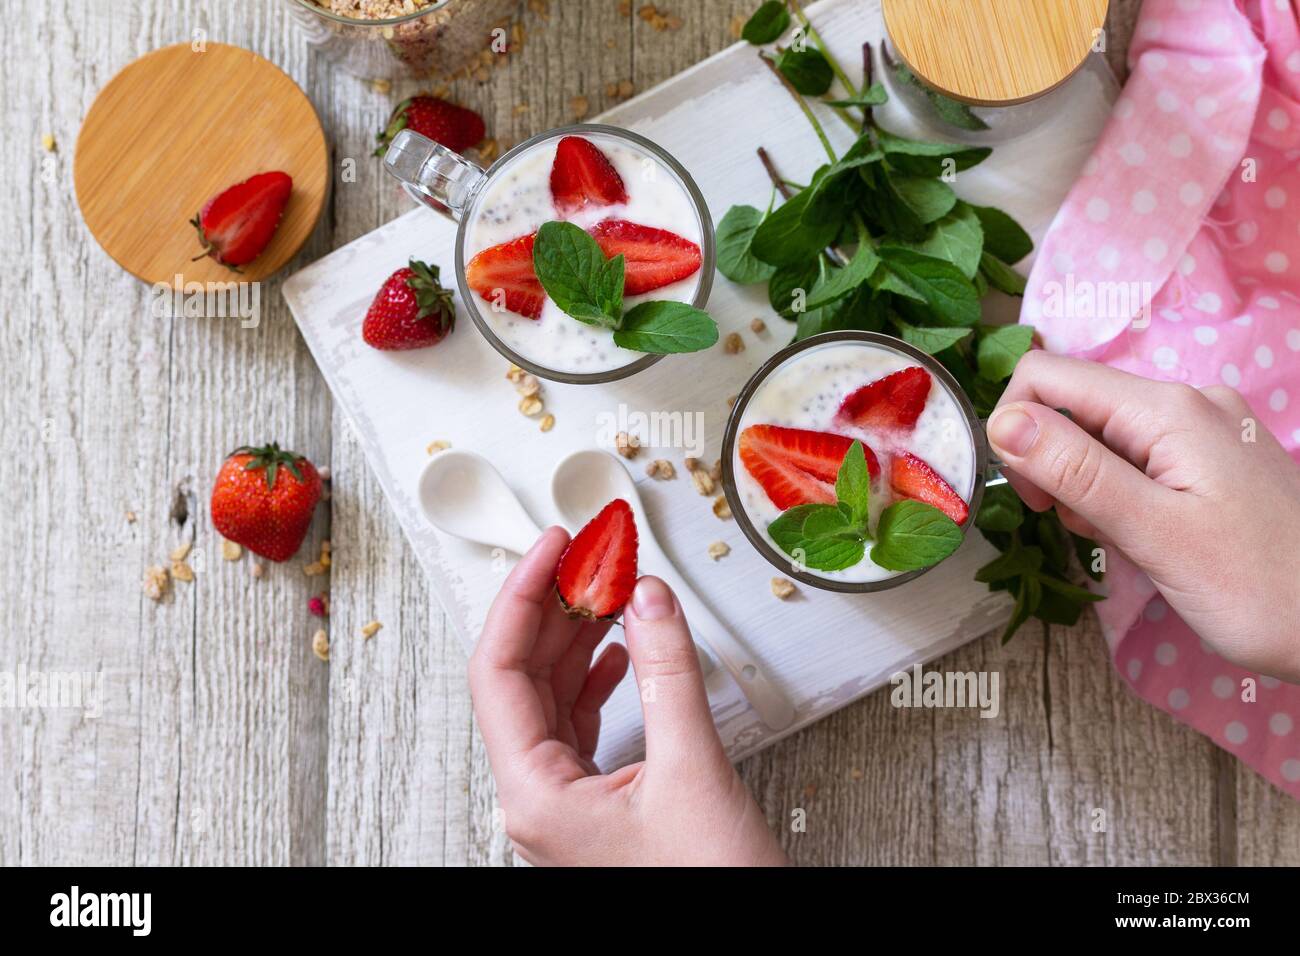 Concept de saine alimentation petit déjeuner. Parfait aux fraises avec yaourt, graines de chia, granola maison et baies fraîches sur un plan de travail en pierre. Vue de dessus Banque D'Images